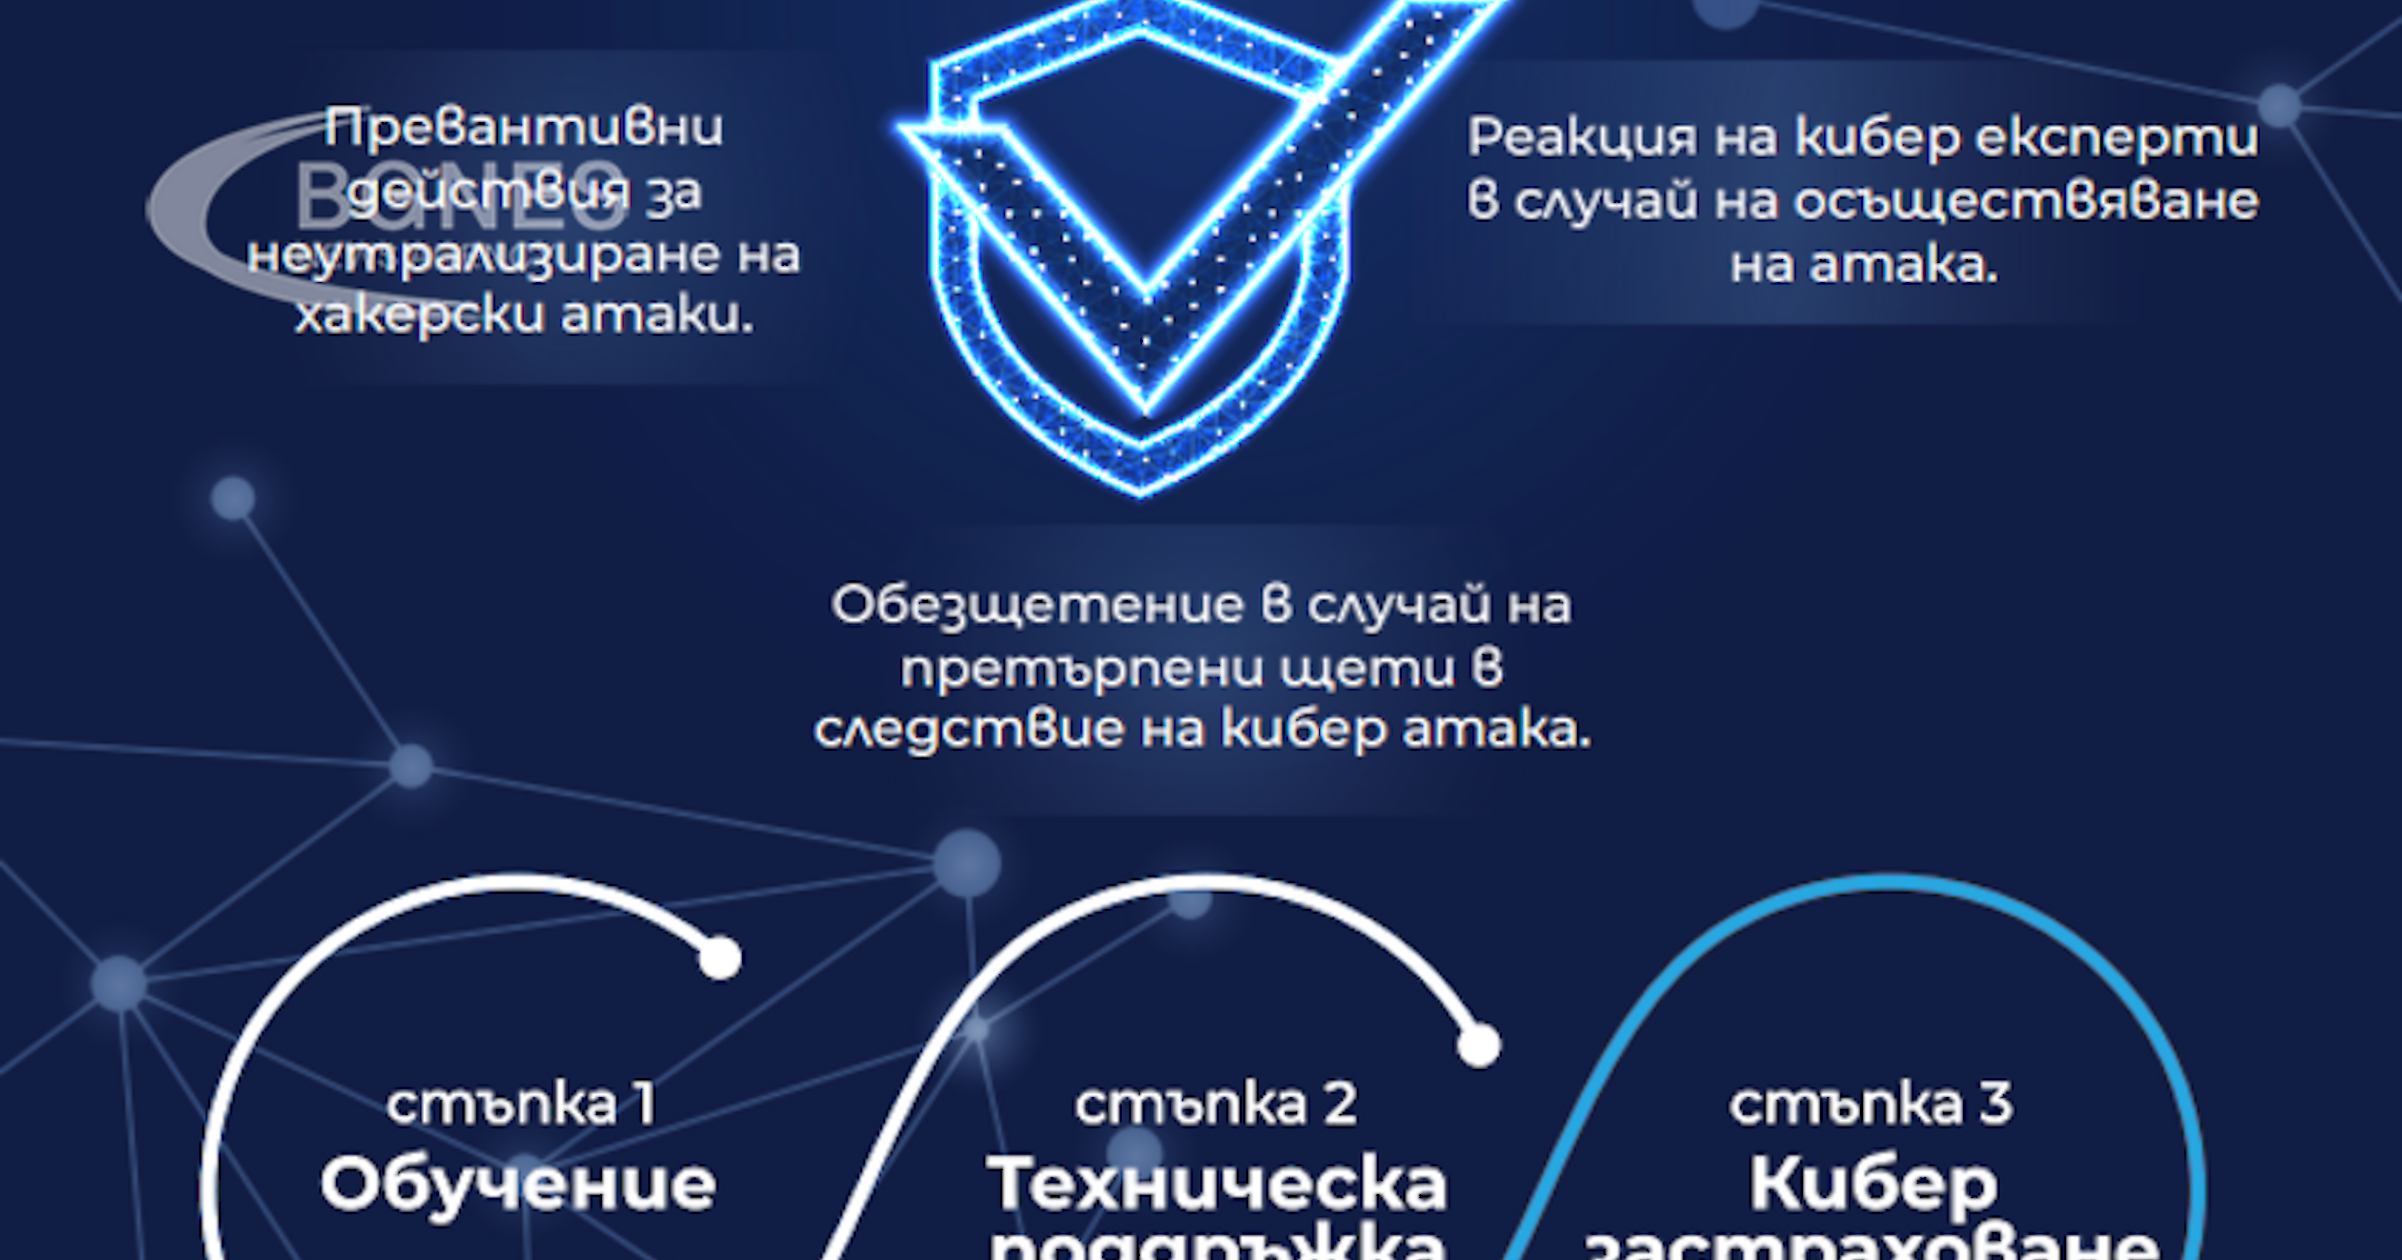 ЗК Лев Инс АД ще предложи специални условия за киберзастраховки